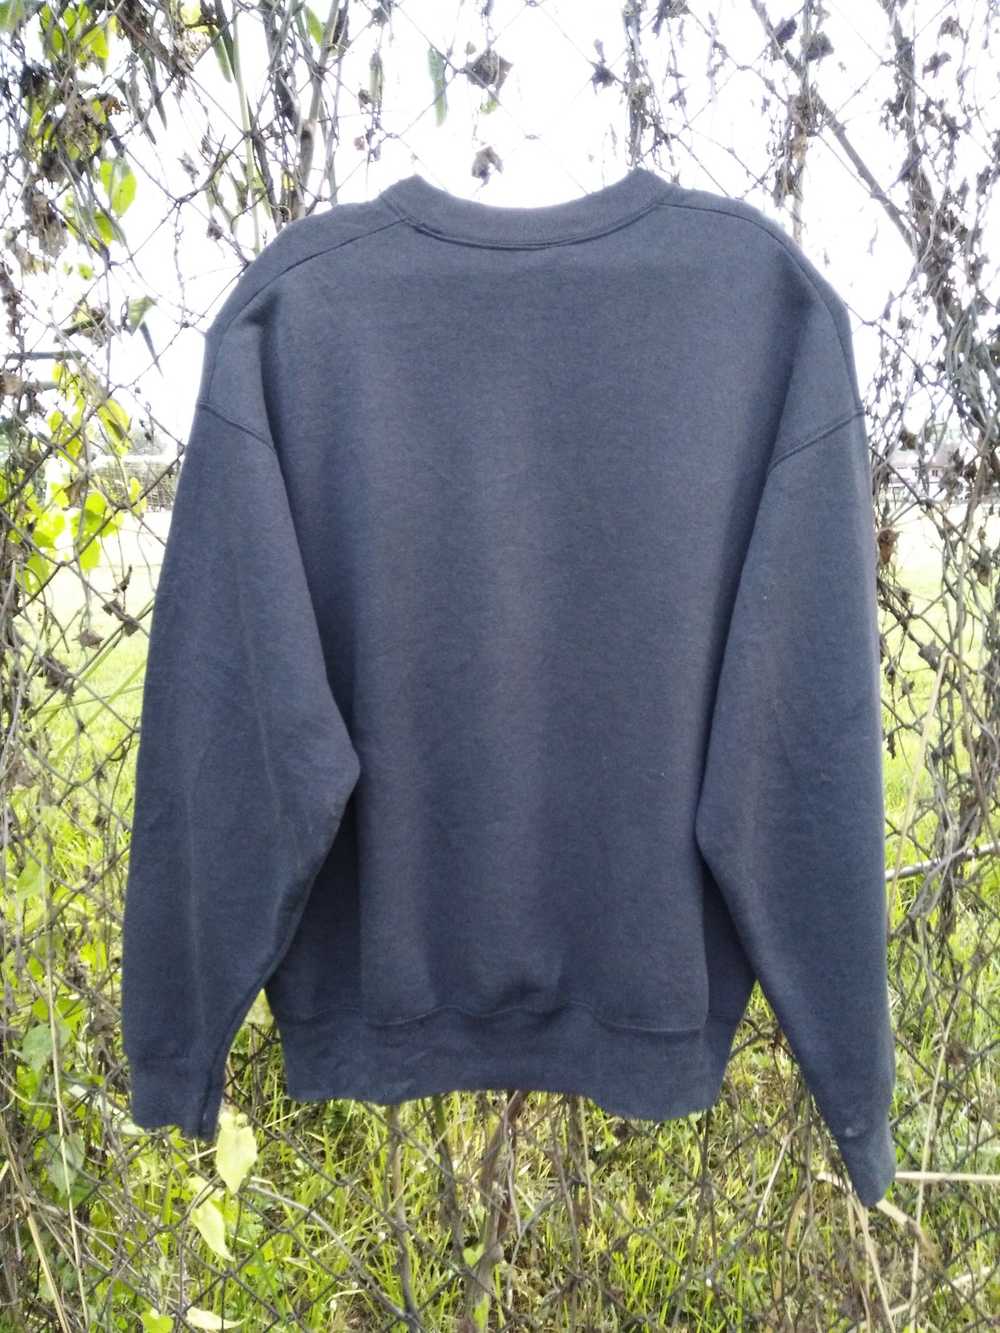 Made In Usa × Salem Sportswear × Vintage sweatshi… - image 2